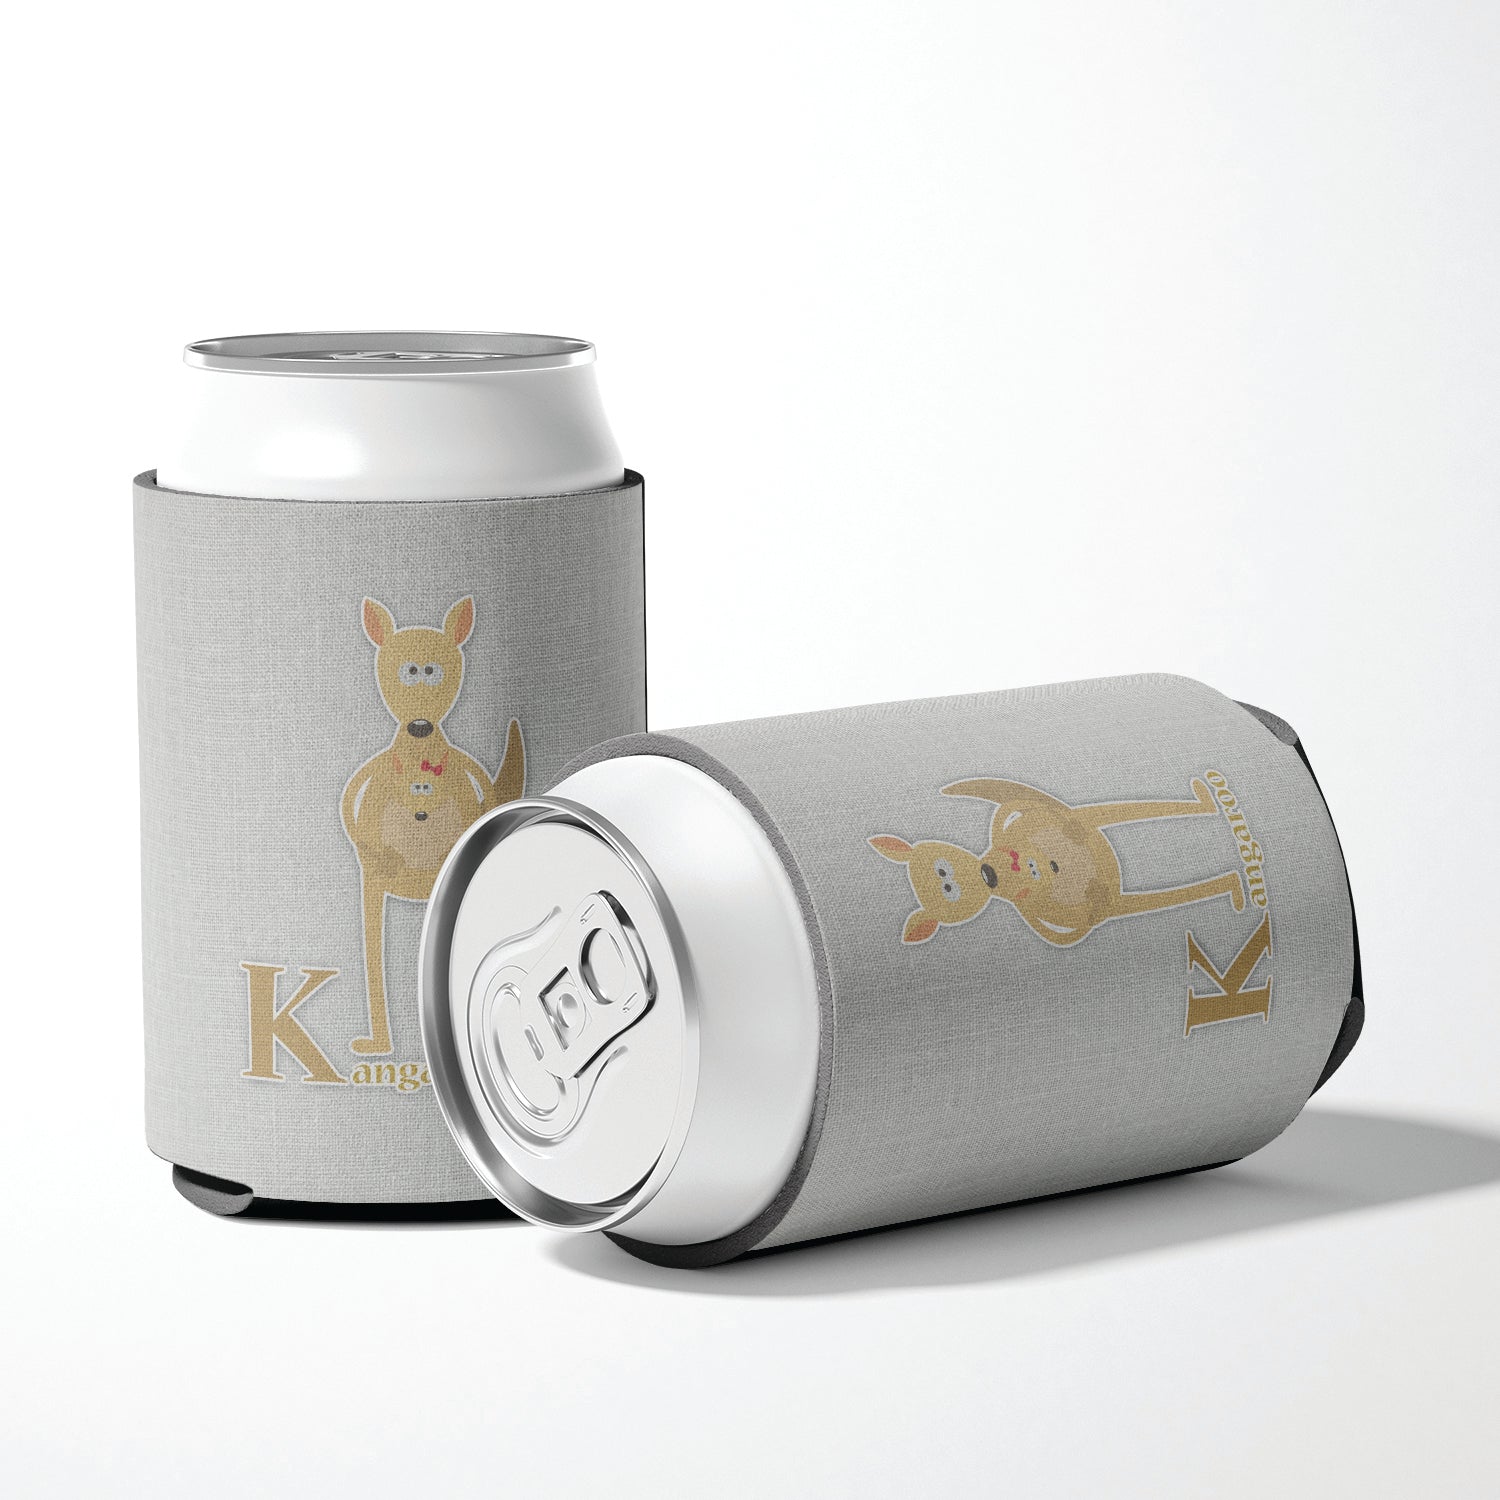 Alphabet K for Kangaroo Can or Bottle Hugger BB5736CC